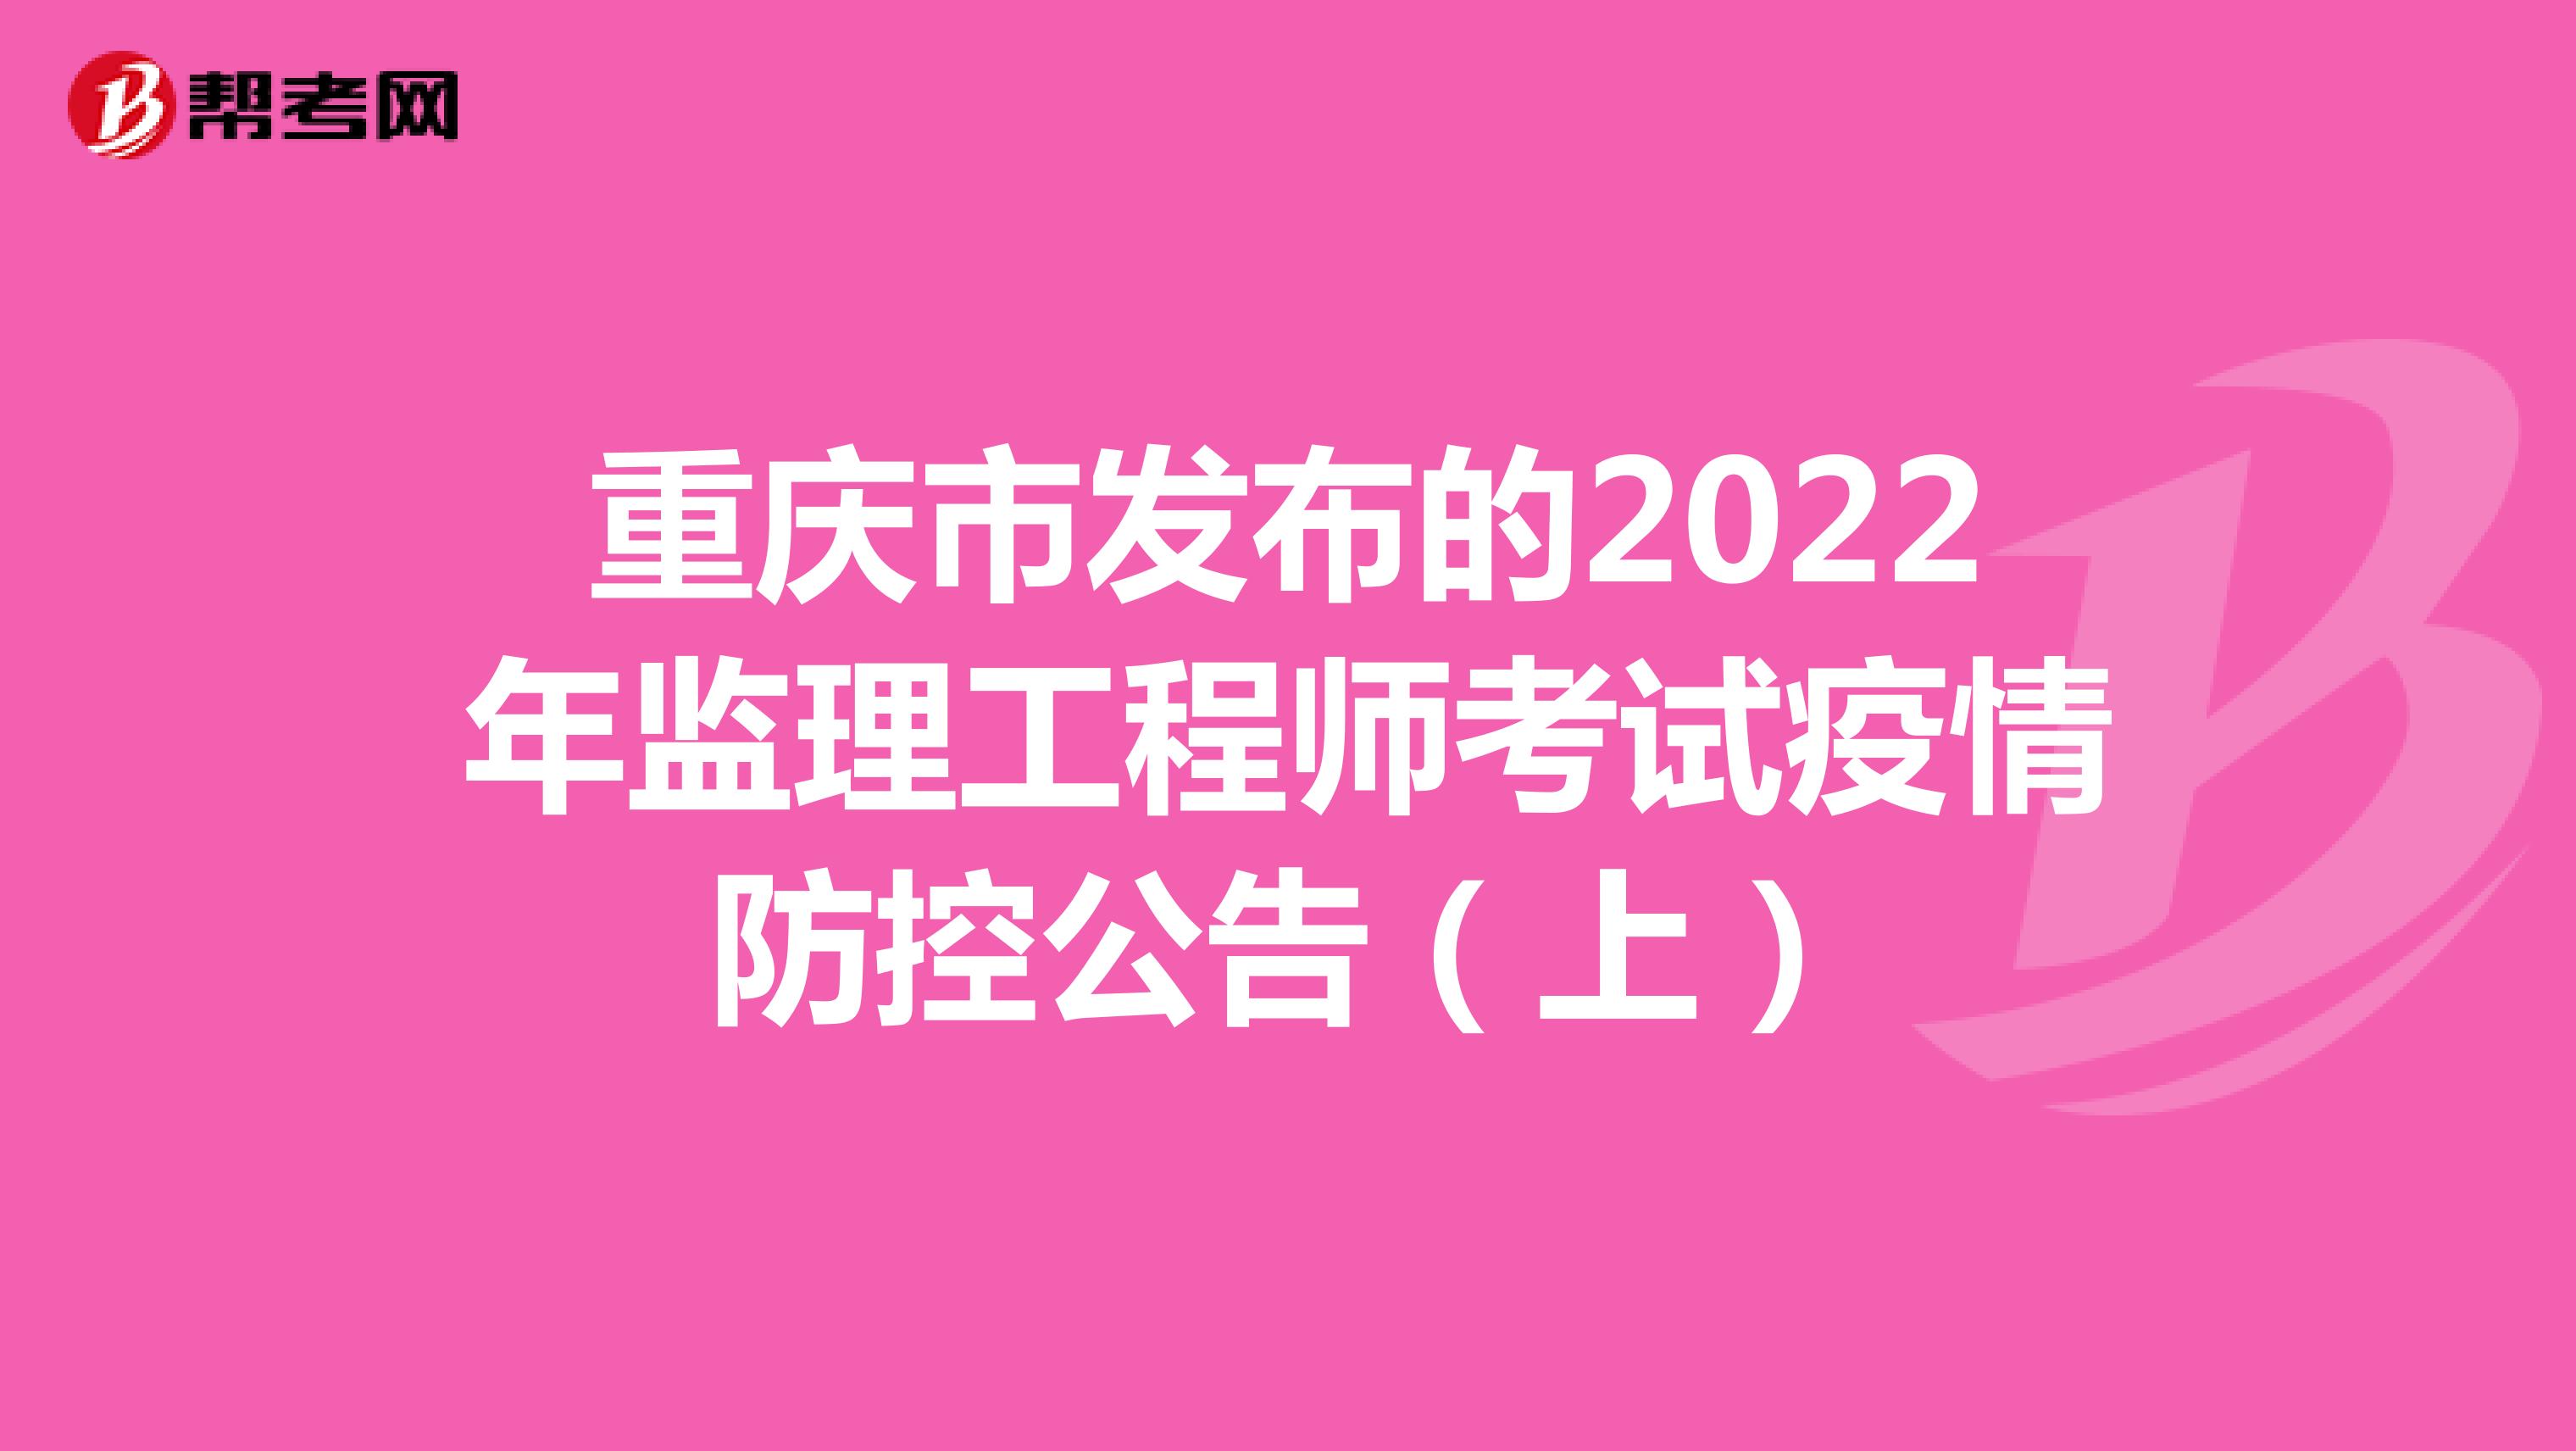 重庆市发布的2022年监理工程师考试疫情防控公告（上）